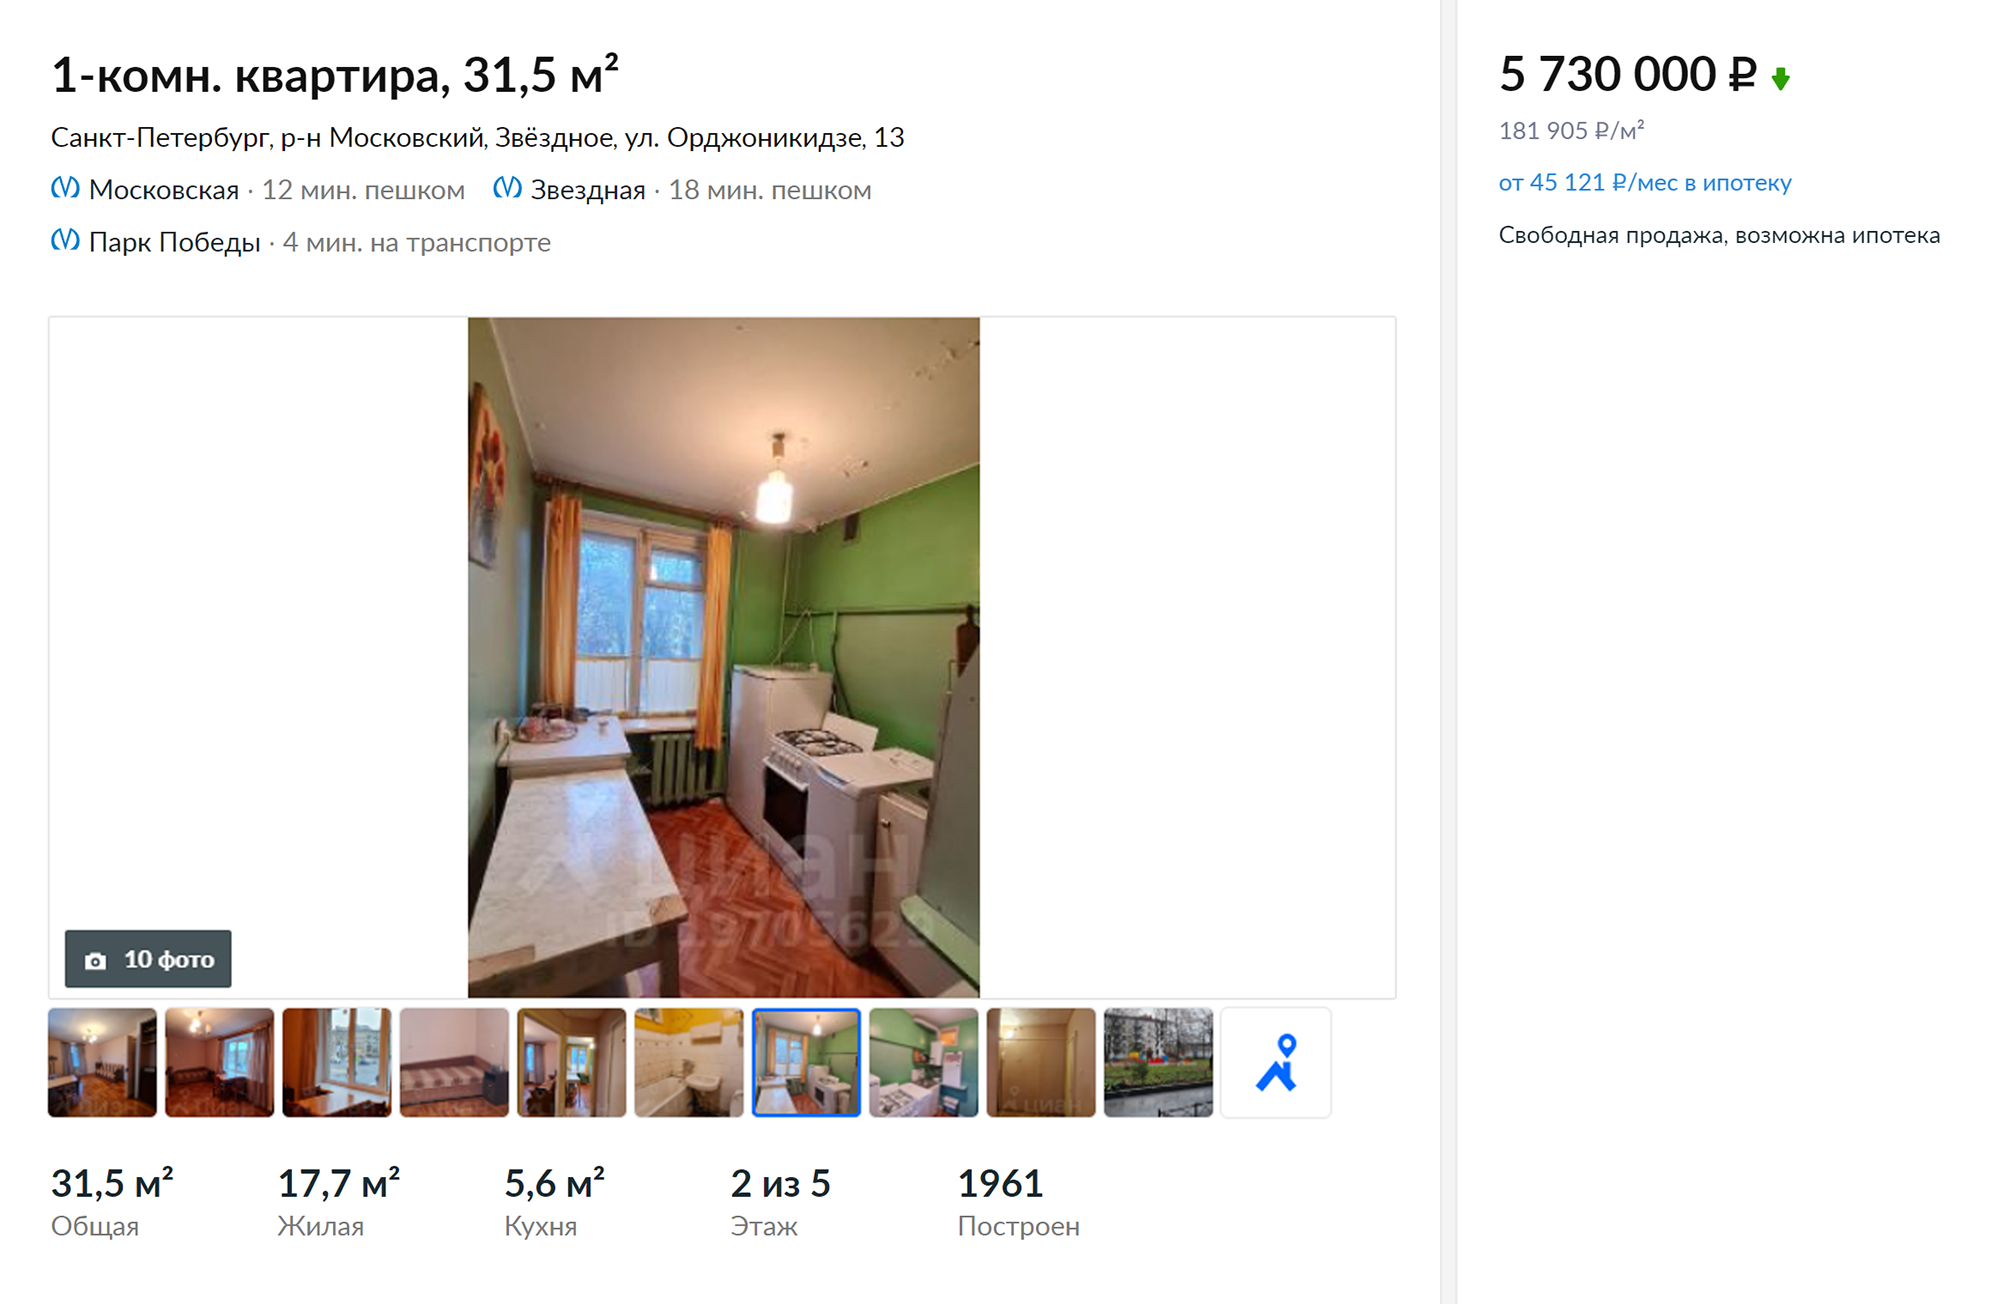 Квартира на улице Орджоникидзе, дом 13, стоила 5 730 000 ₽. Сейчас объявление уже снято. Источник: cian.ru